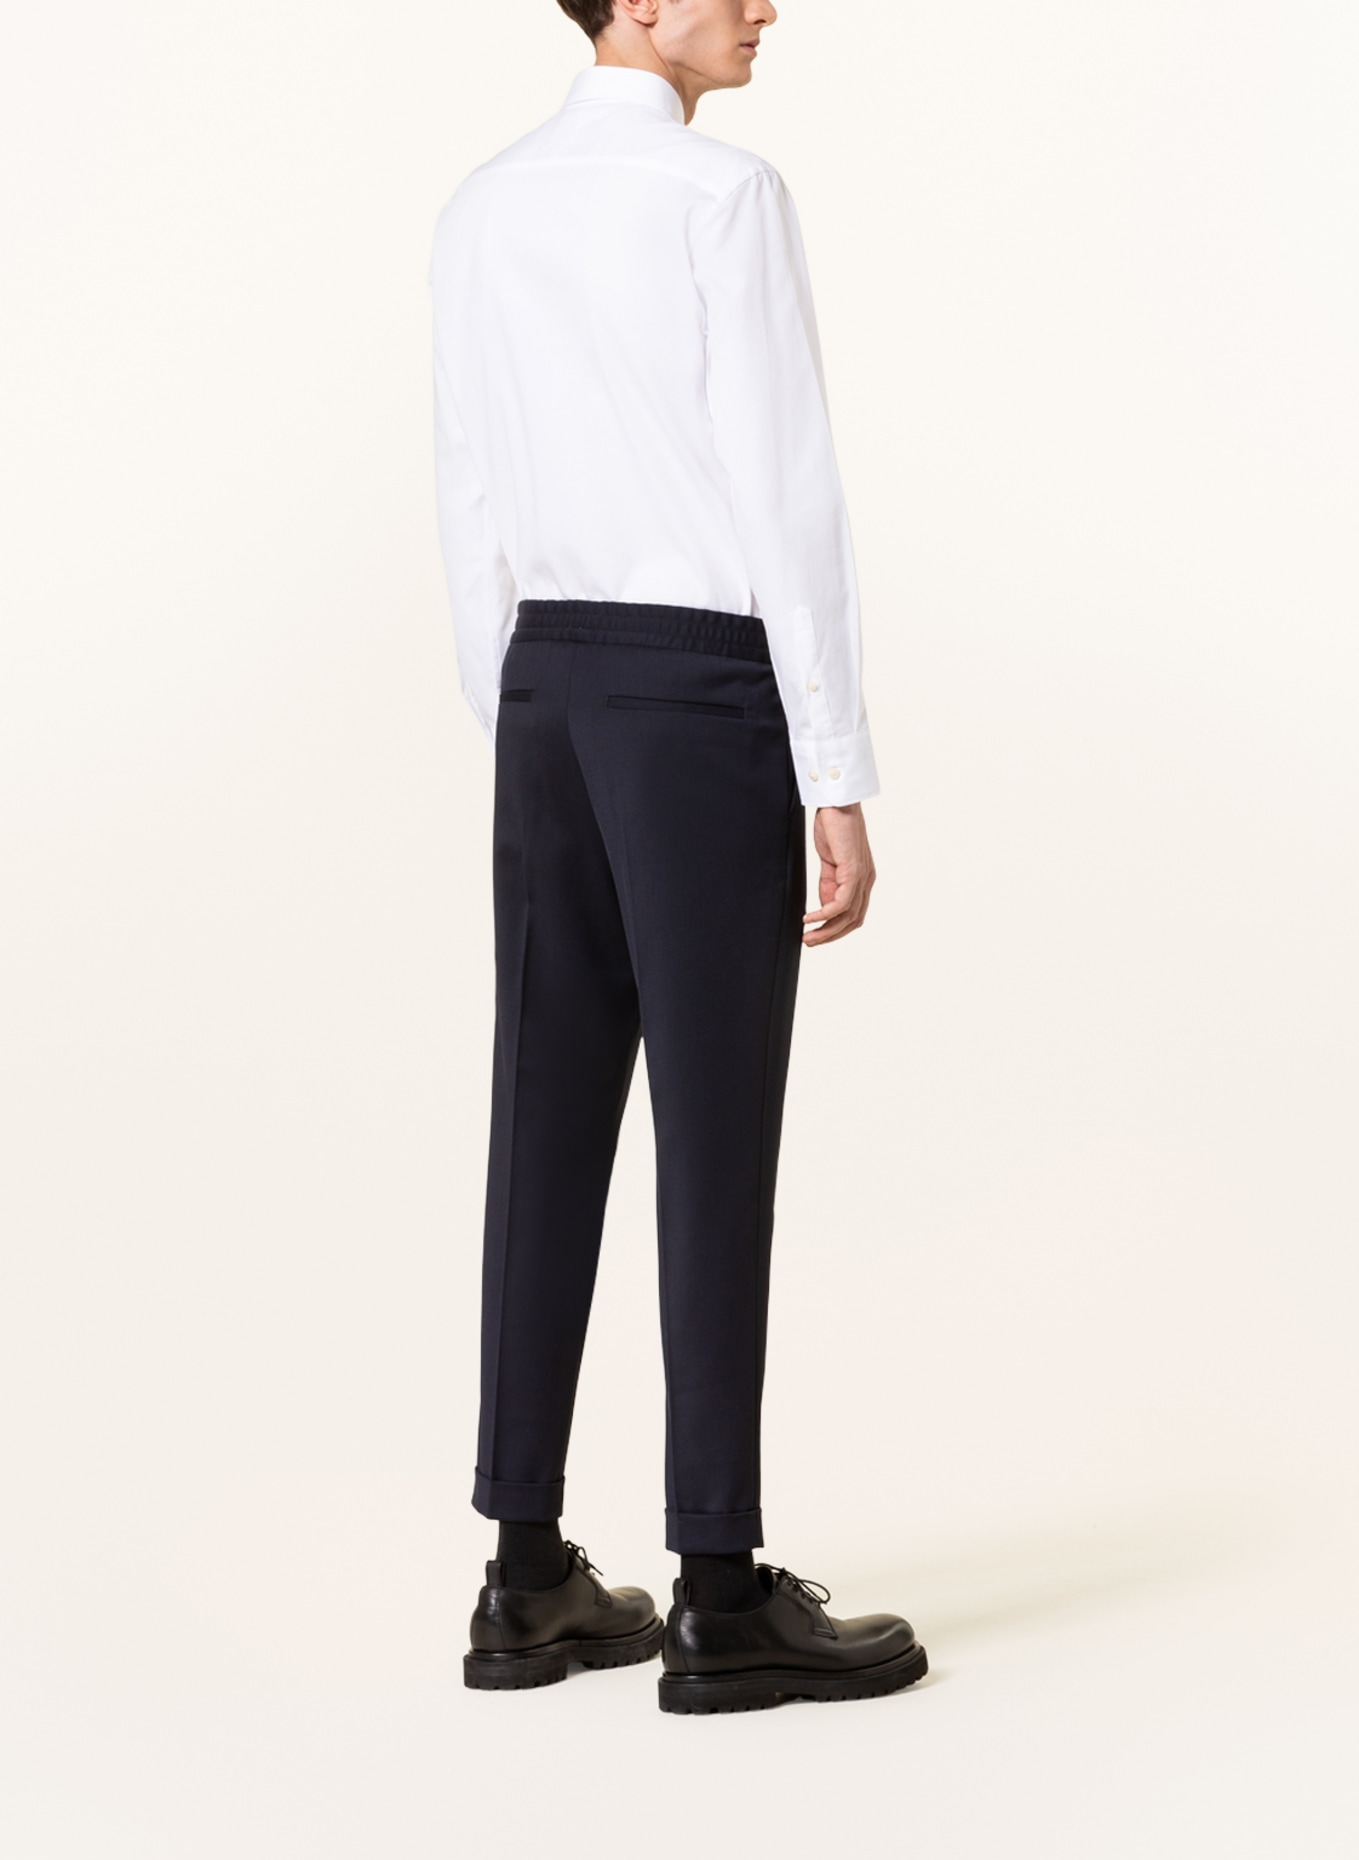 TIGER OF SWEDEN Shirt ADLEY slim fit, Color: WHITE (Image 3)